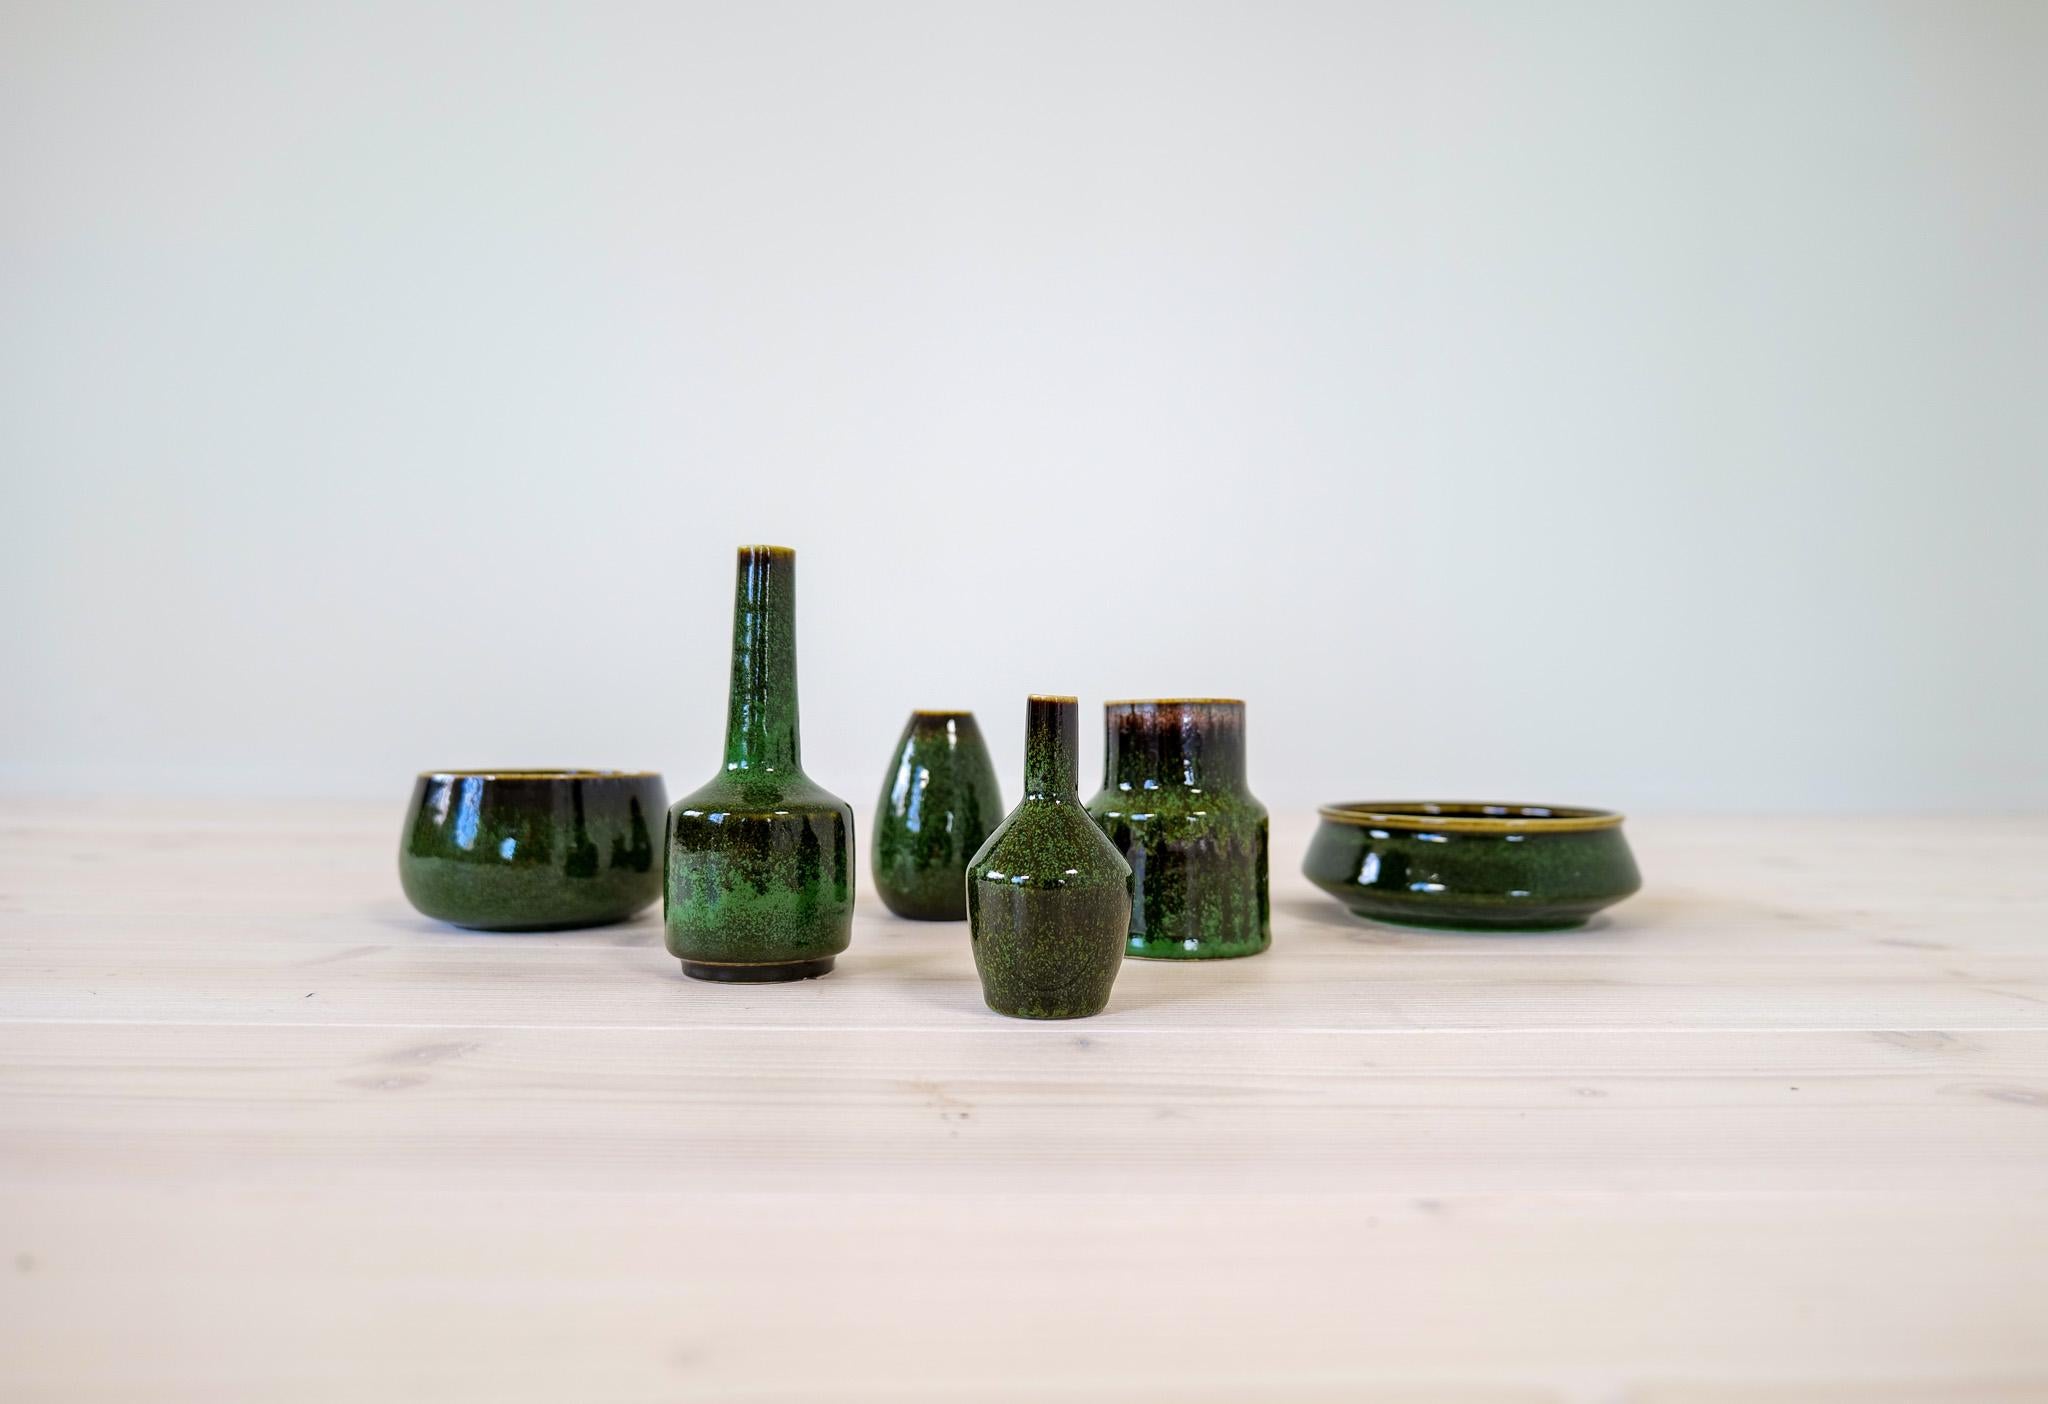 Collectional de vases et de bols de Rörstrand et du fabricant/dessinateur Stålhane. Fabriqué en Suède au milieu du siècle dernier. Magnifiques vases émaillés en bon état. Cet ensemble de vases et de bols verts est une belle addition à toute maison